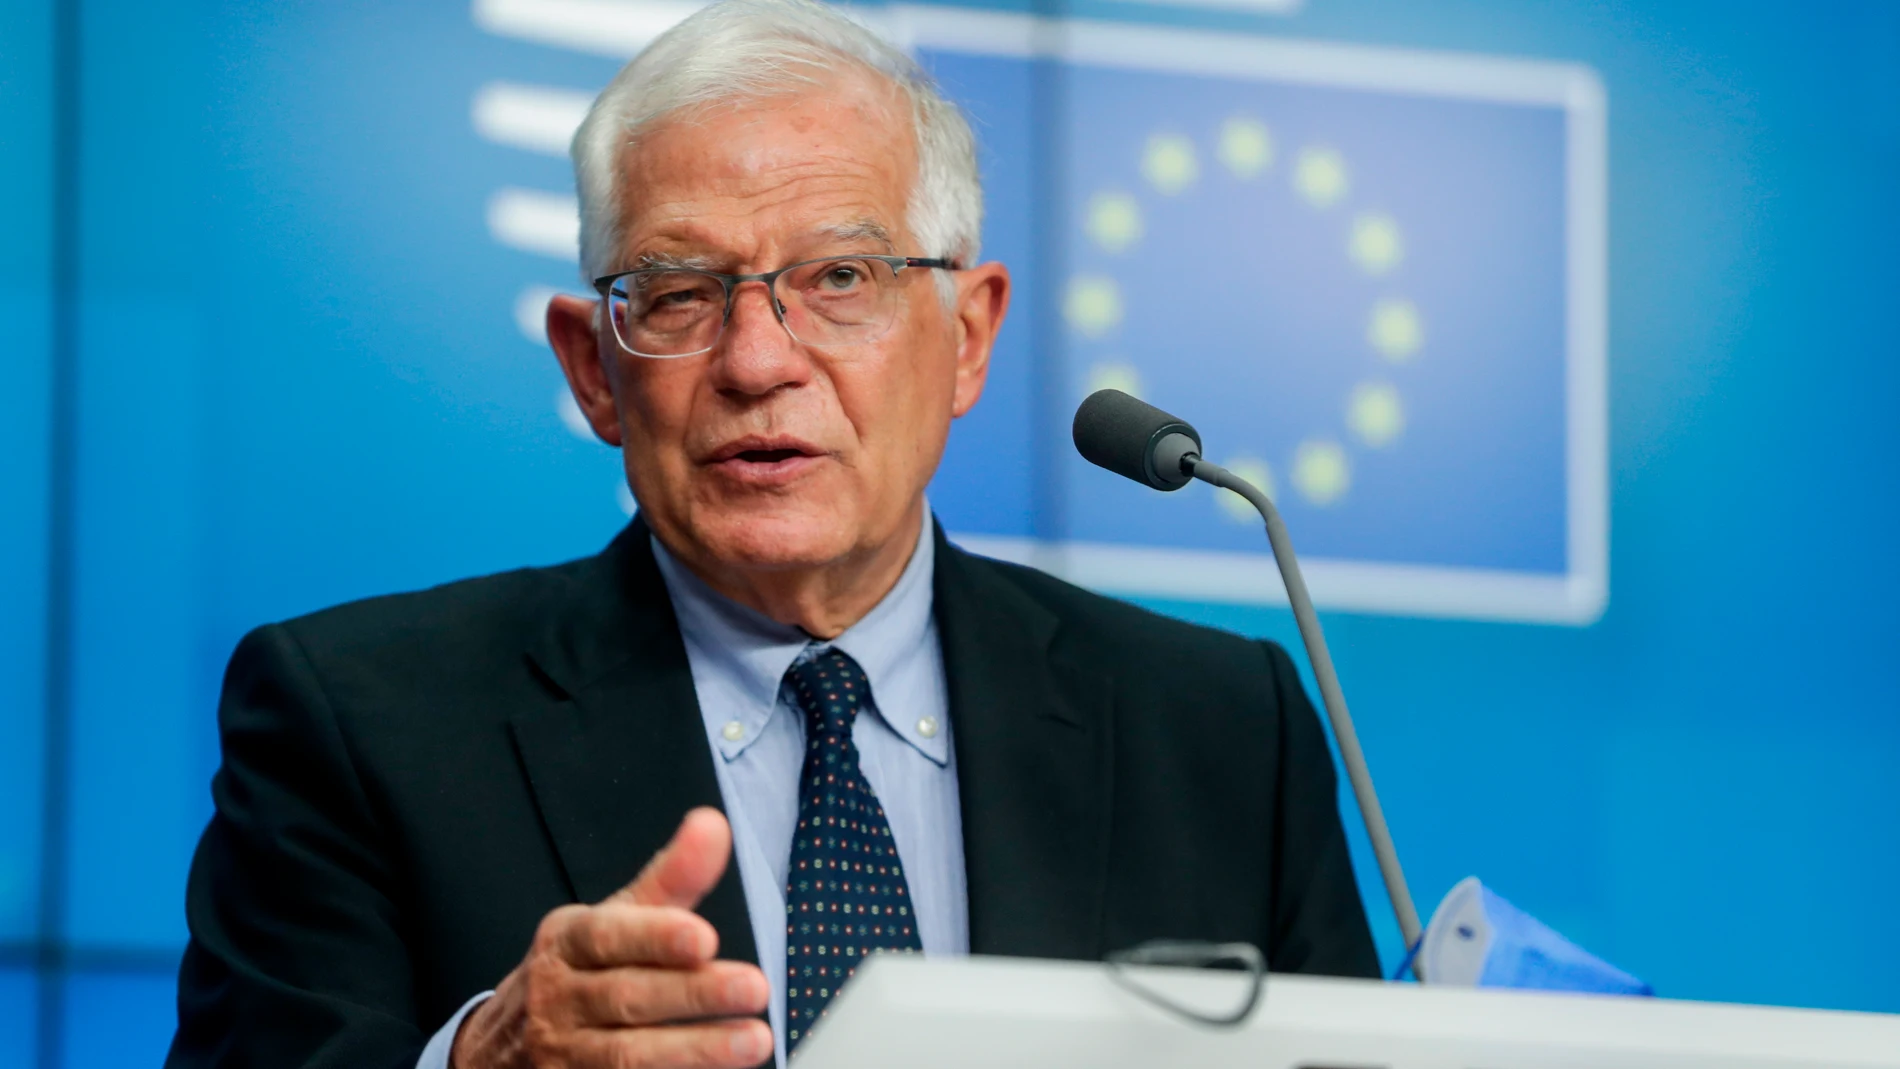 El jefe de política exterior de la UE, Josep Borrell, durante una rueda de prensa en Bruselas